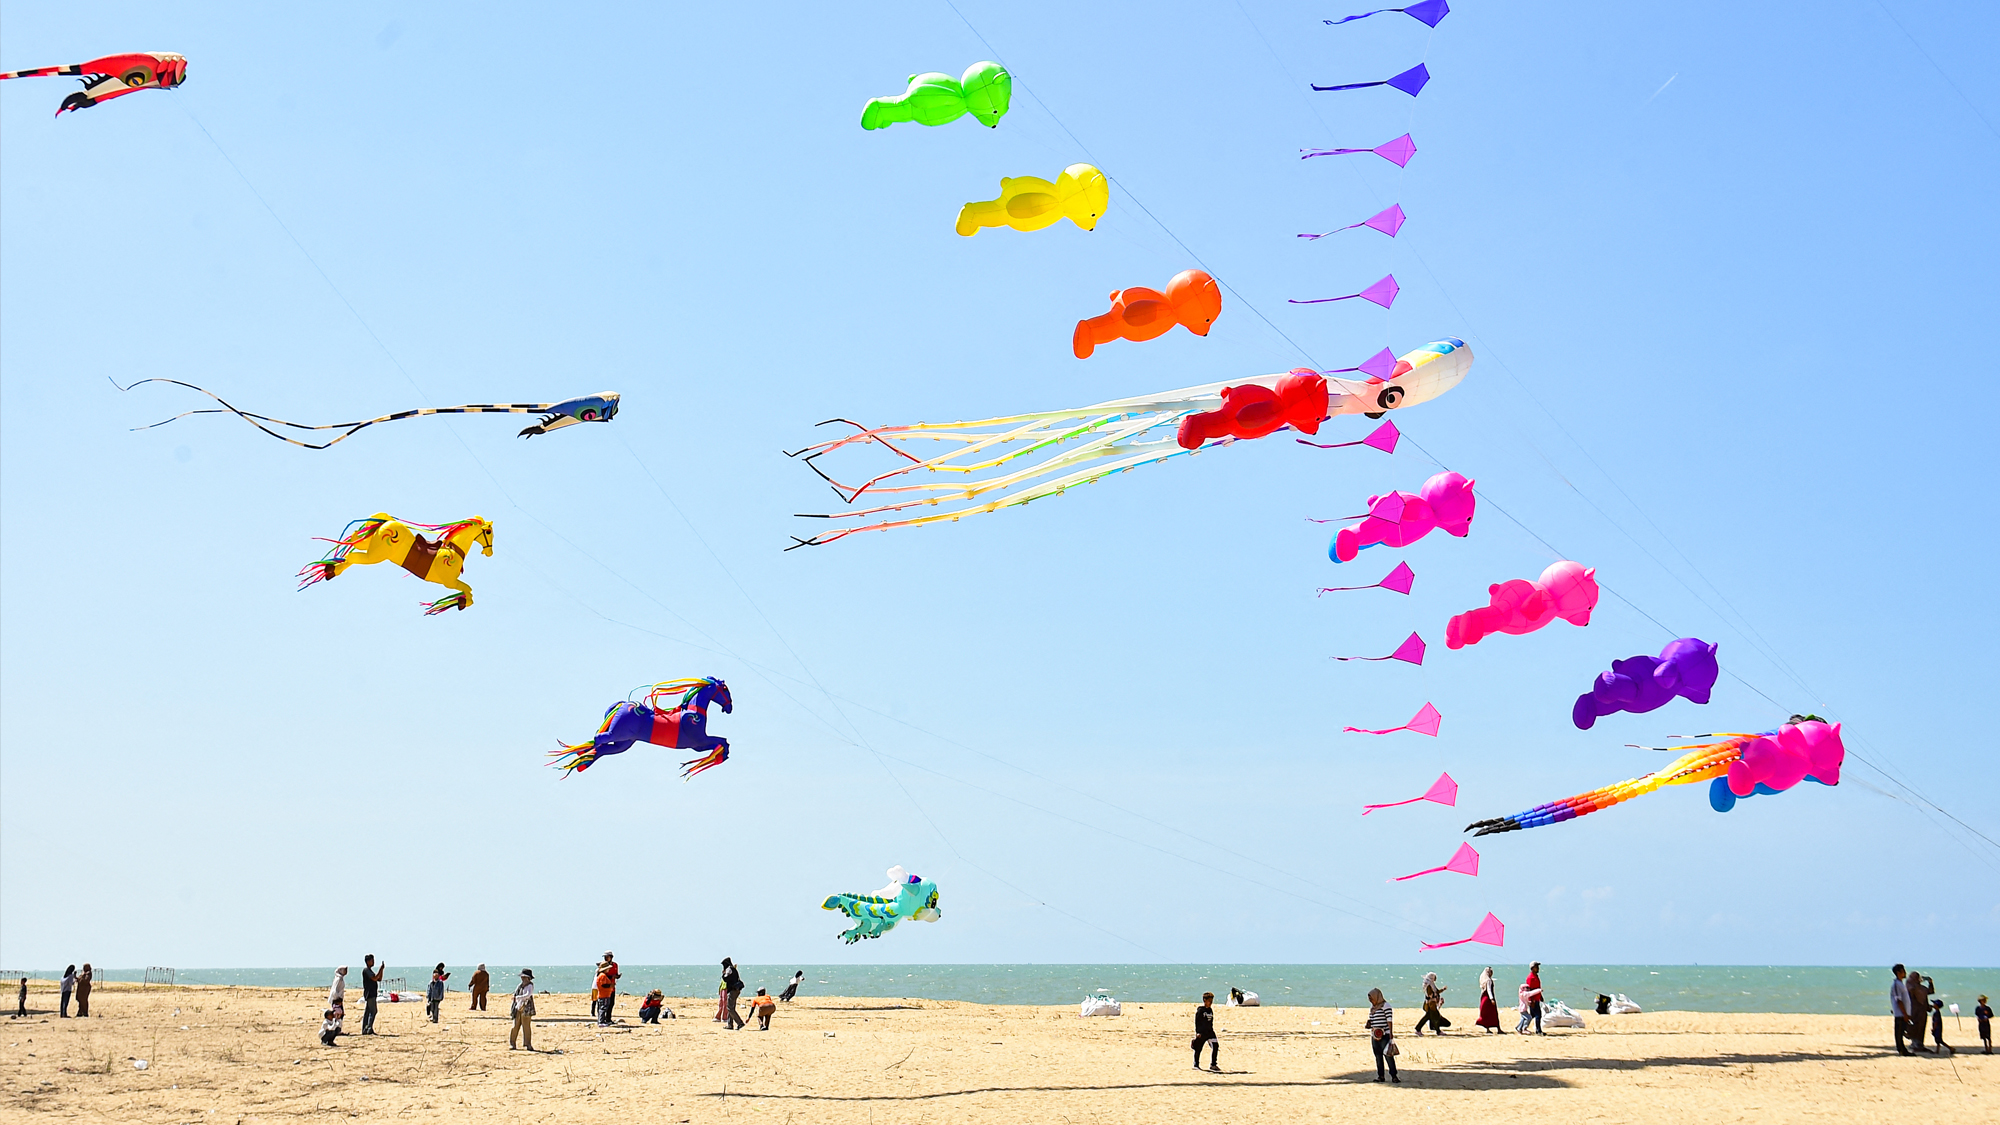 A kite festival